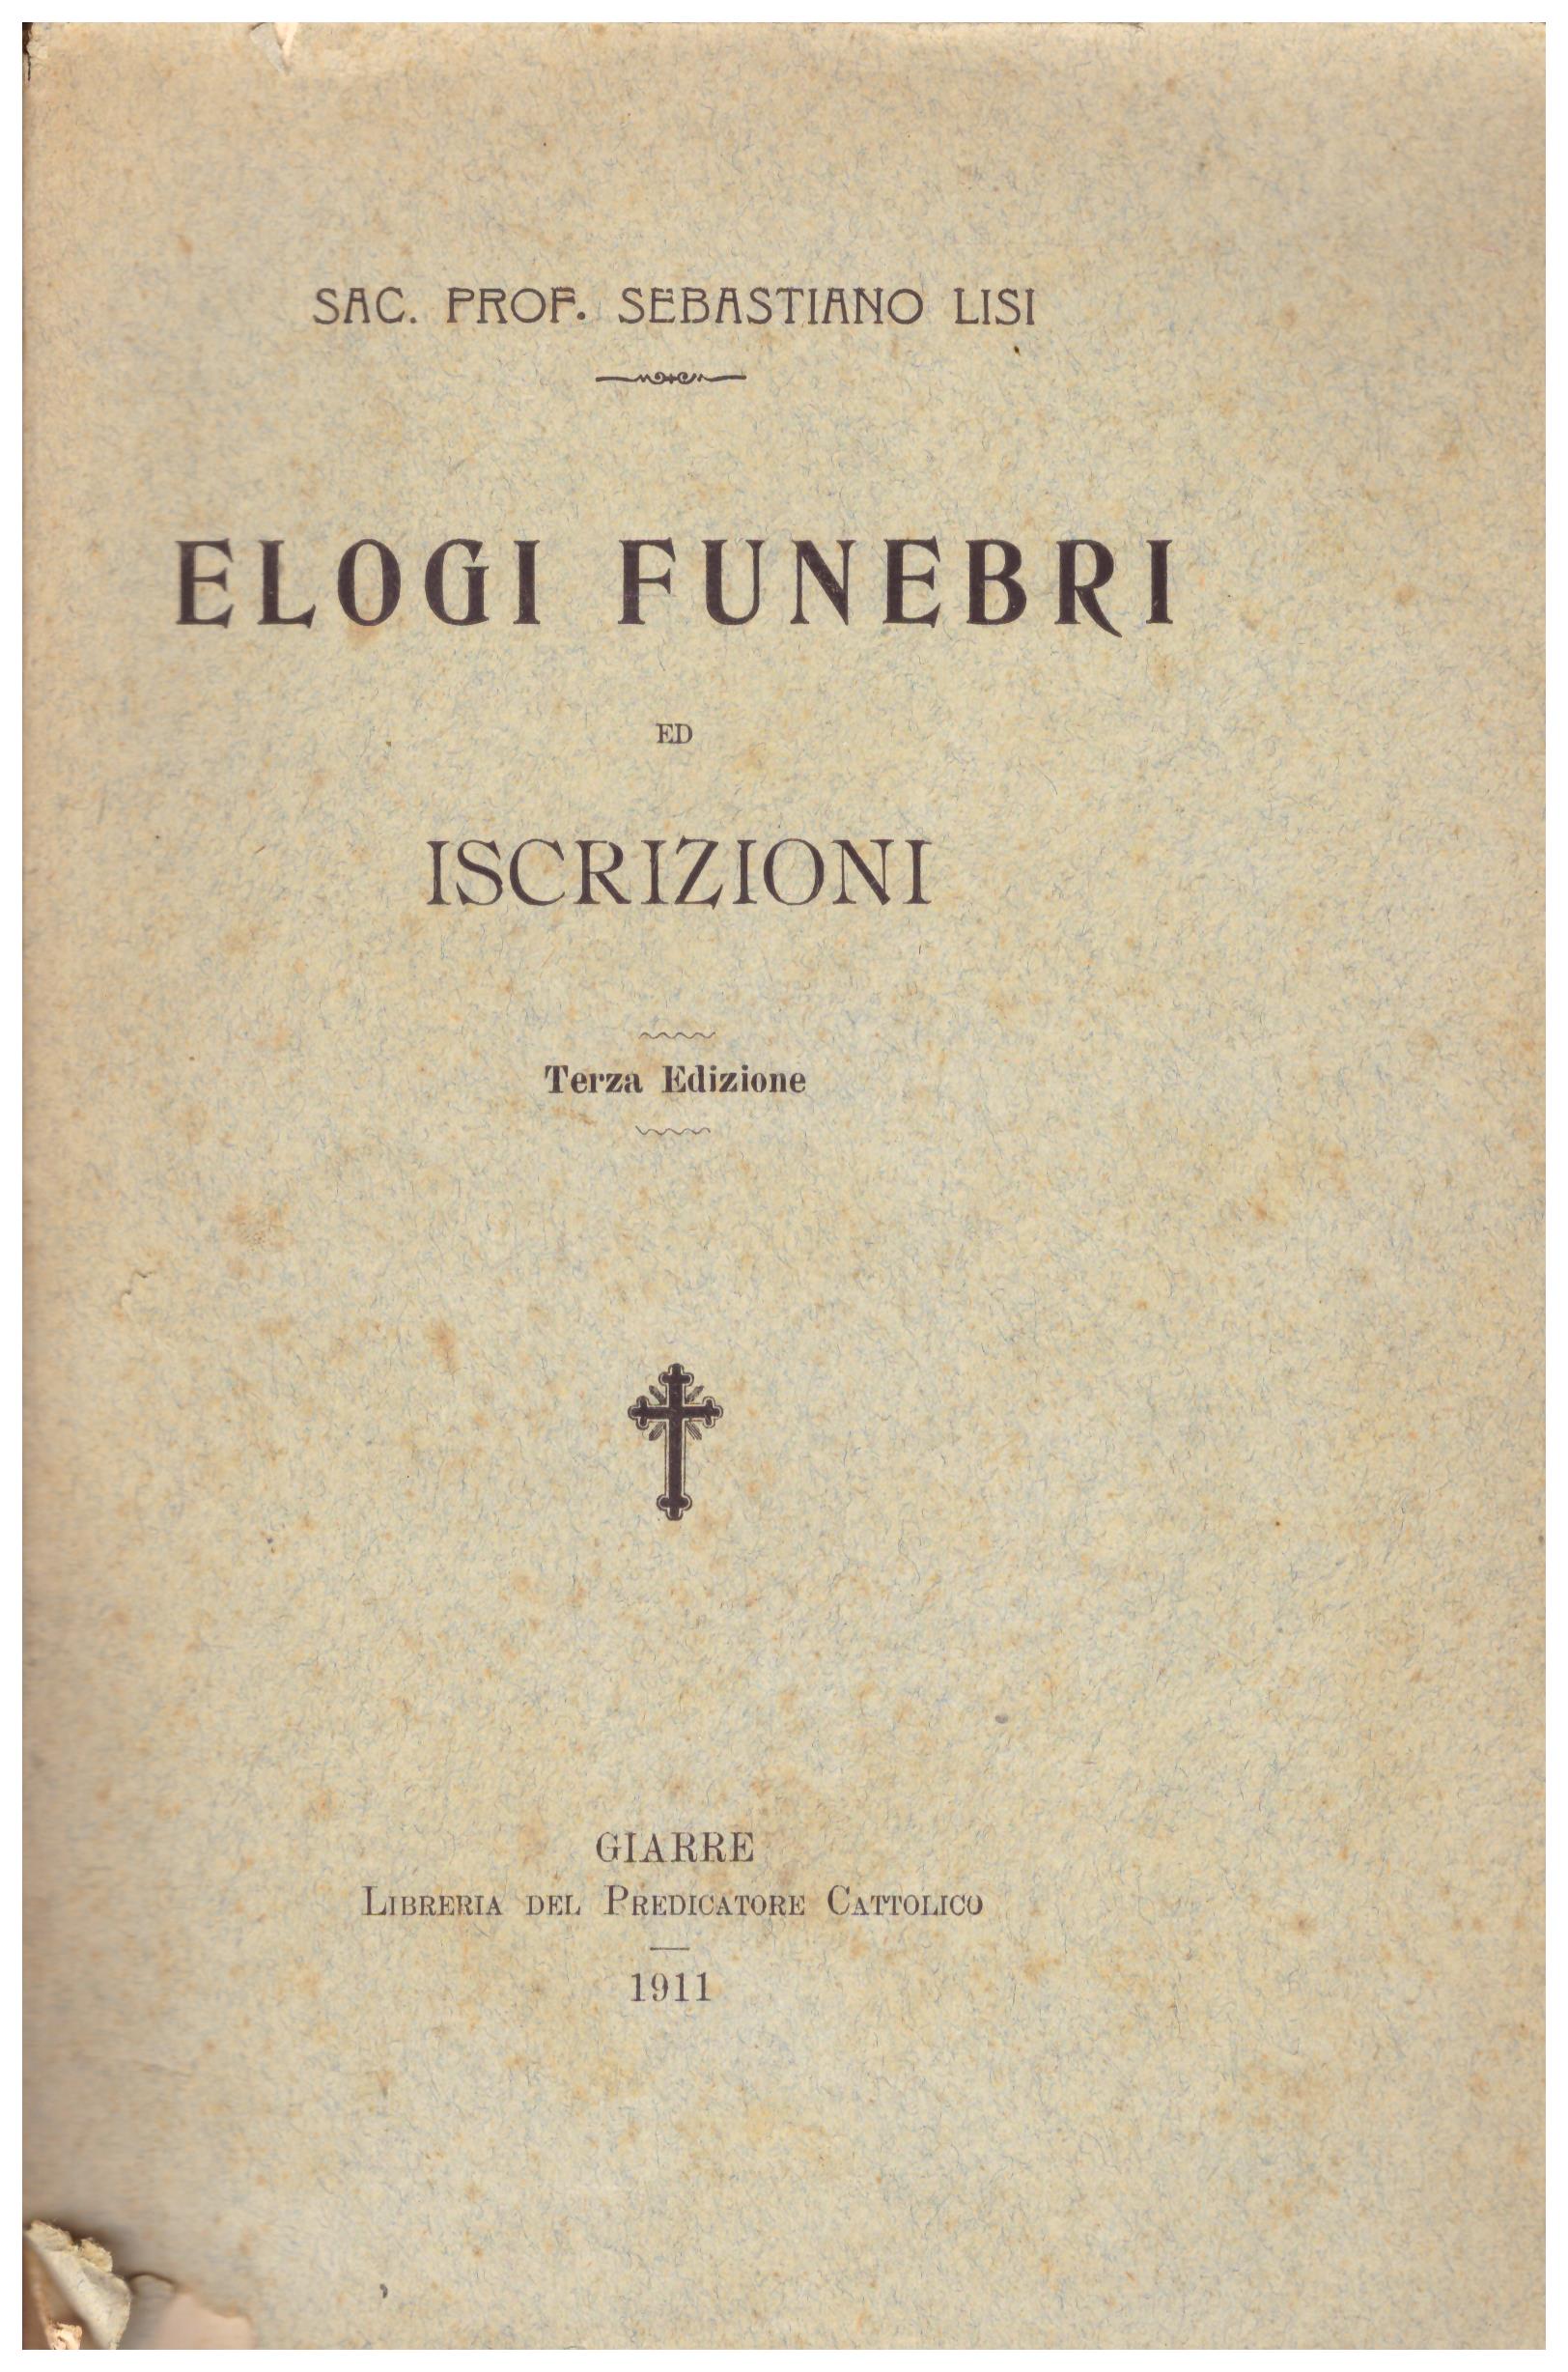 Titolo: Elogi funebri ed iscrizioni  Autore: Sebastiano Lisi  Editore: libreria del predicatore cattolico ,1911